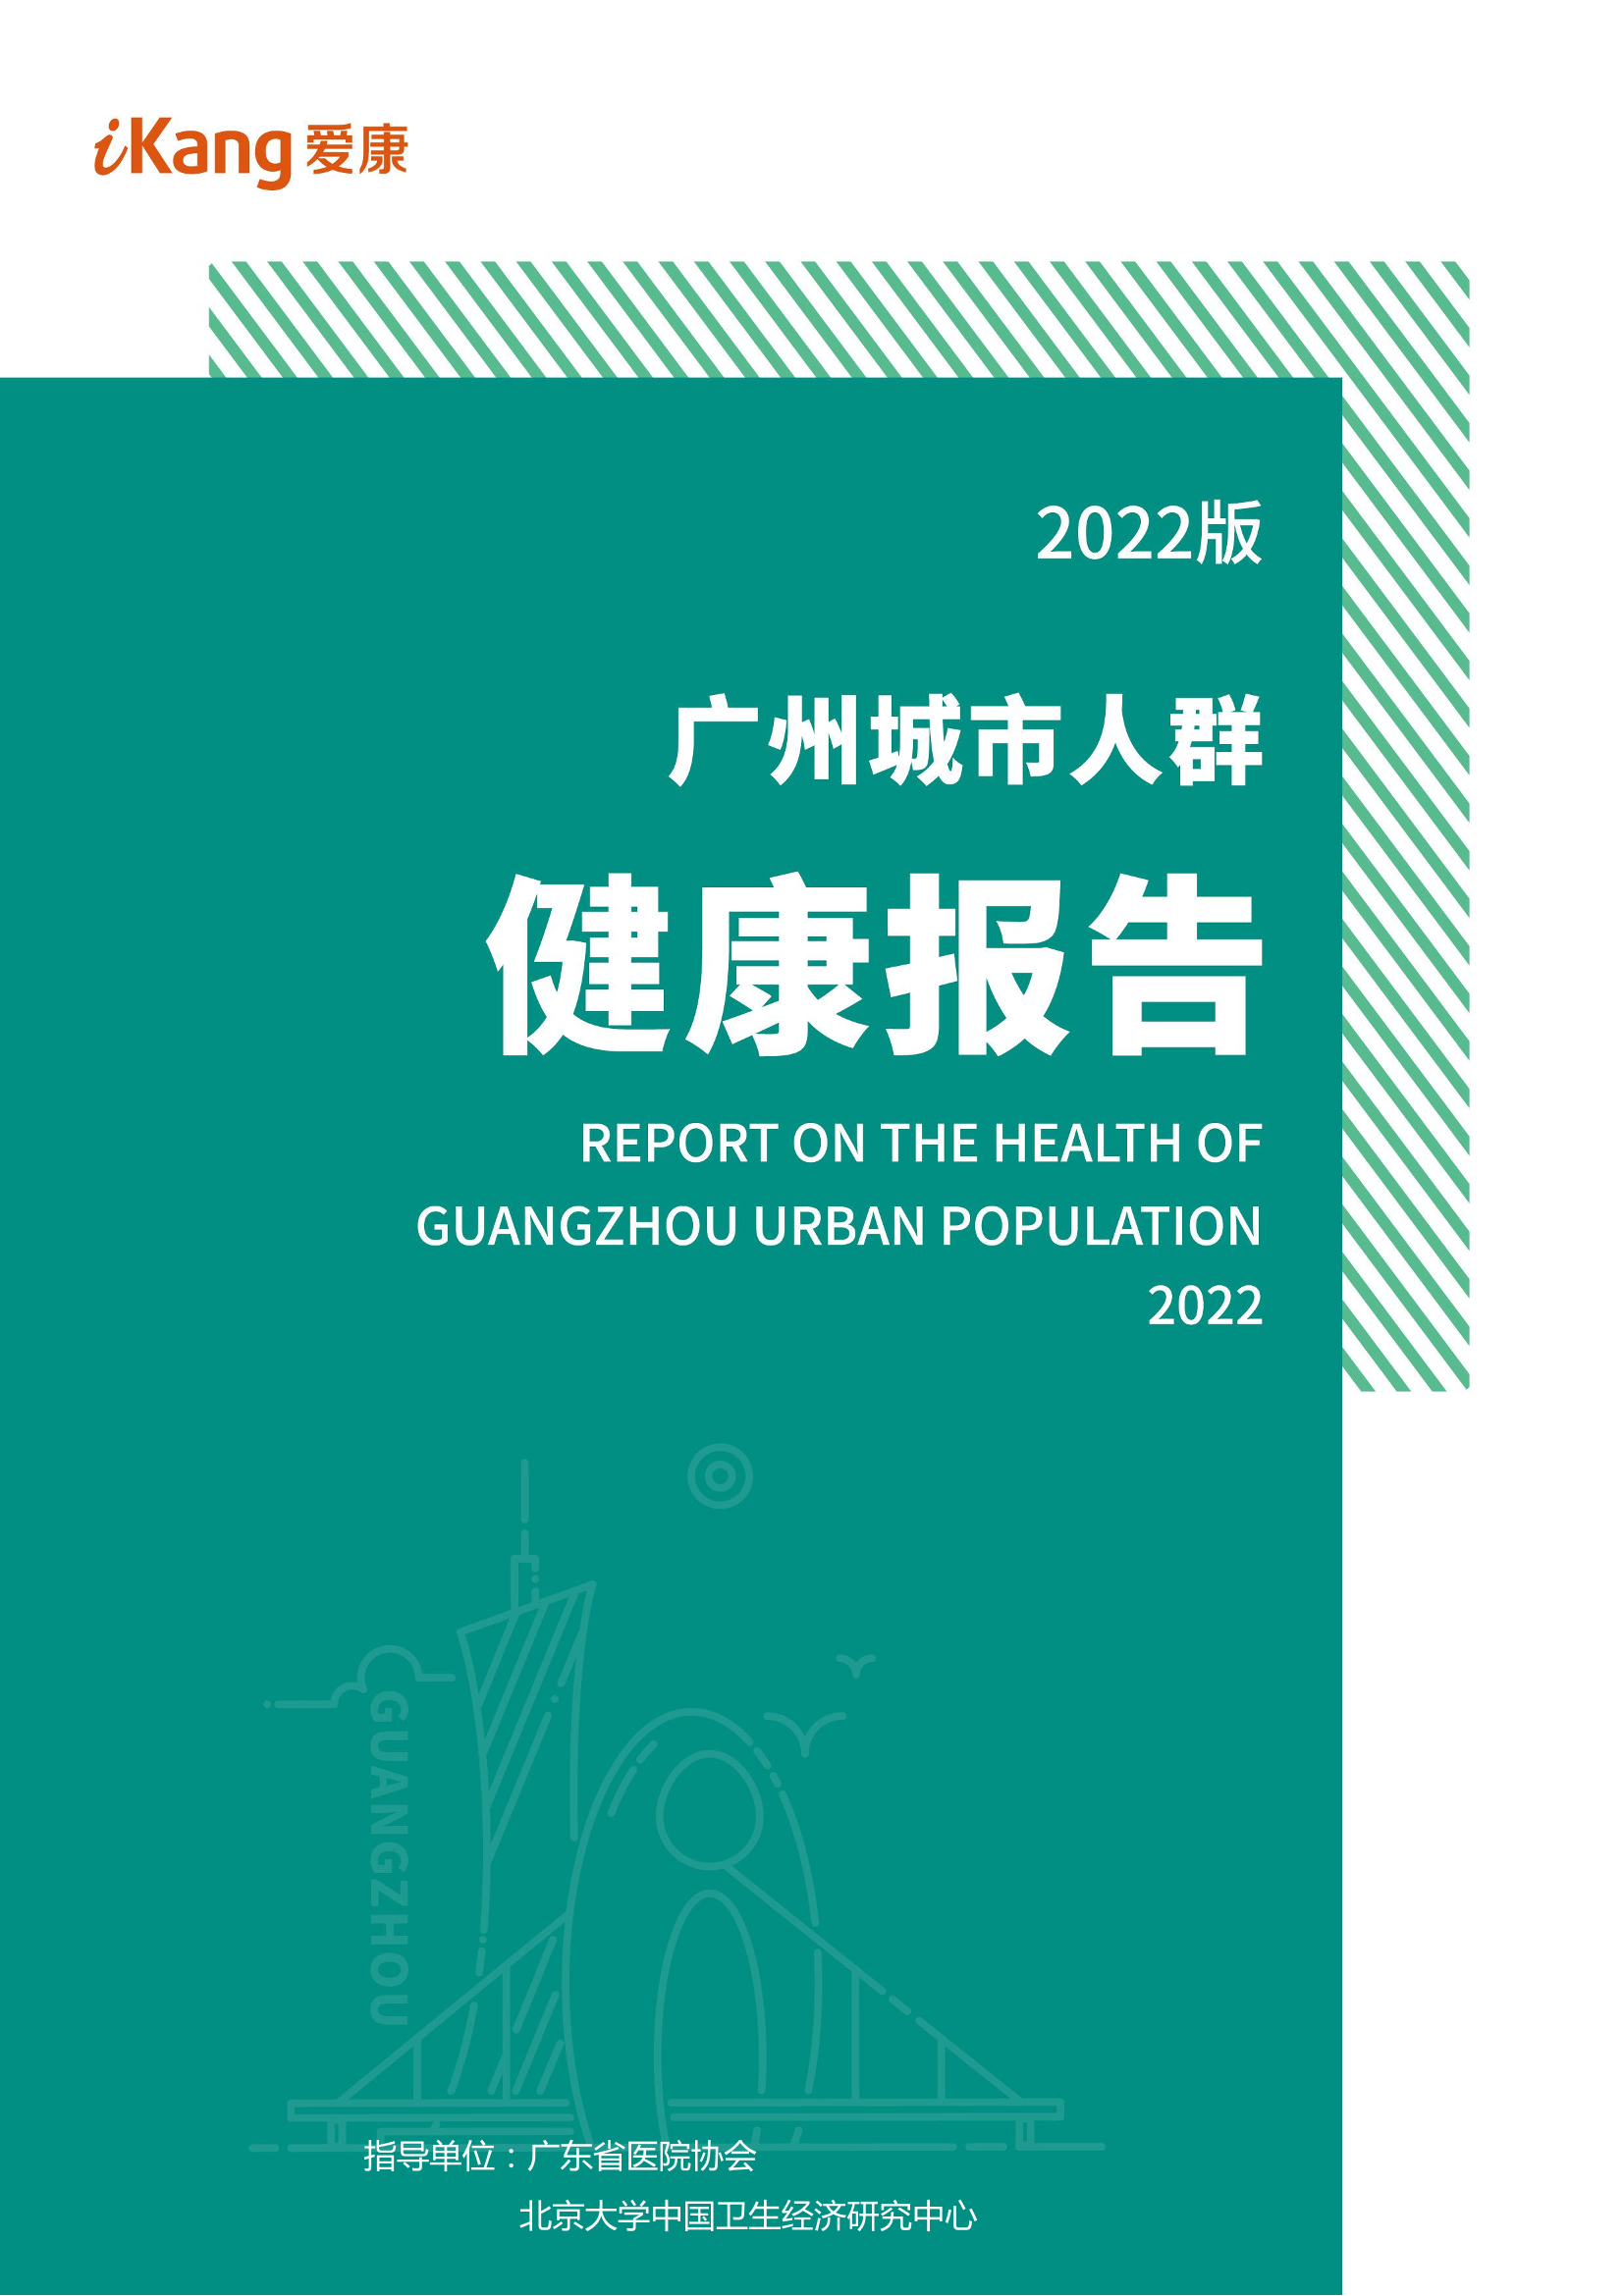 2022版广州城市人群健康报告-爱康-2022-54页2022版广州城市人群健康报告-爱康-2022-54页_1.png